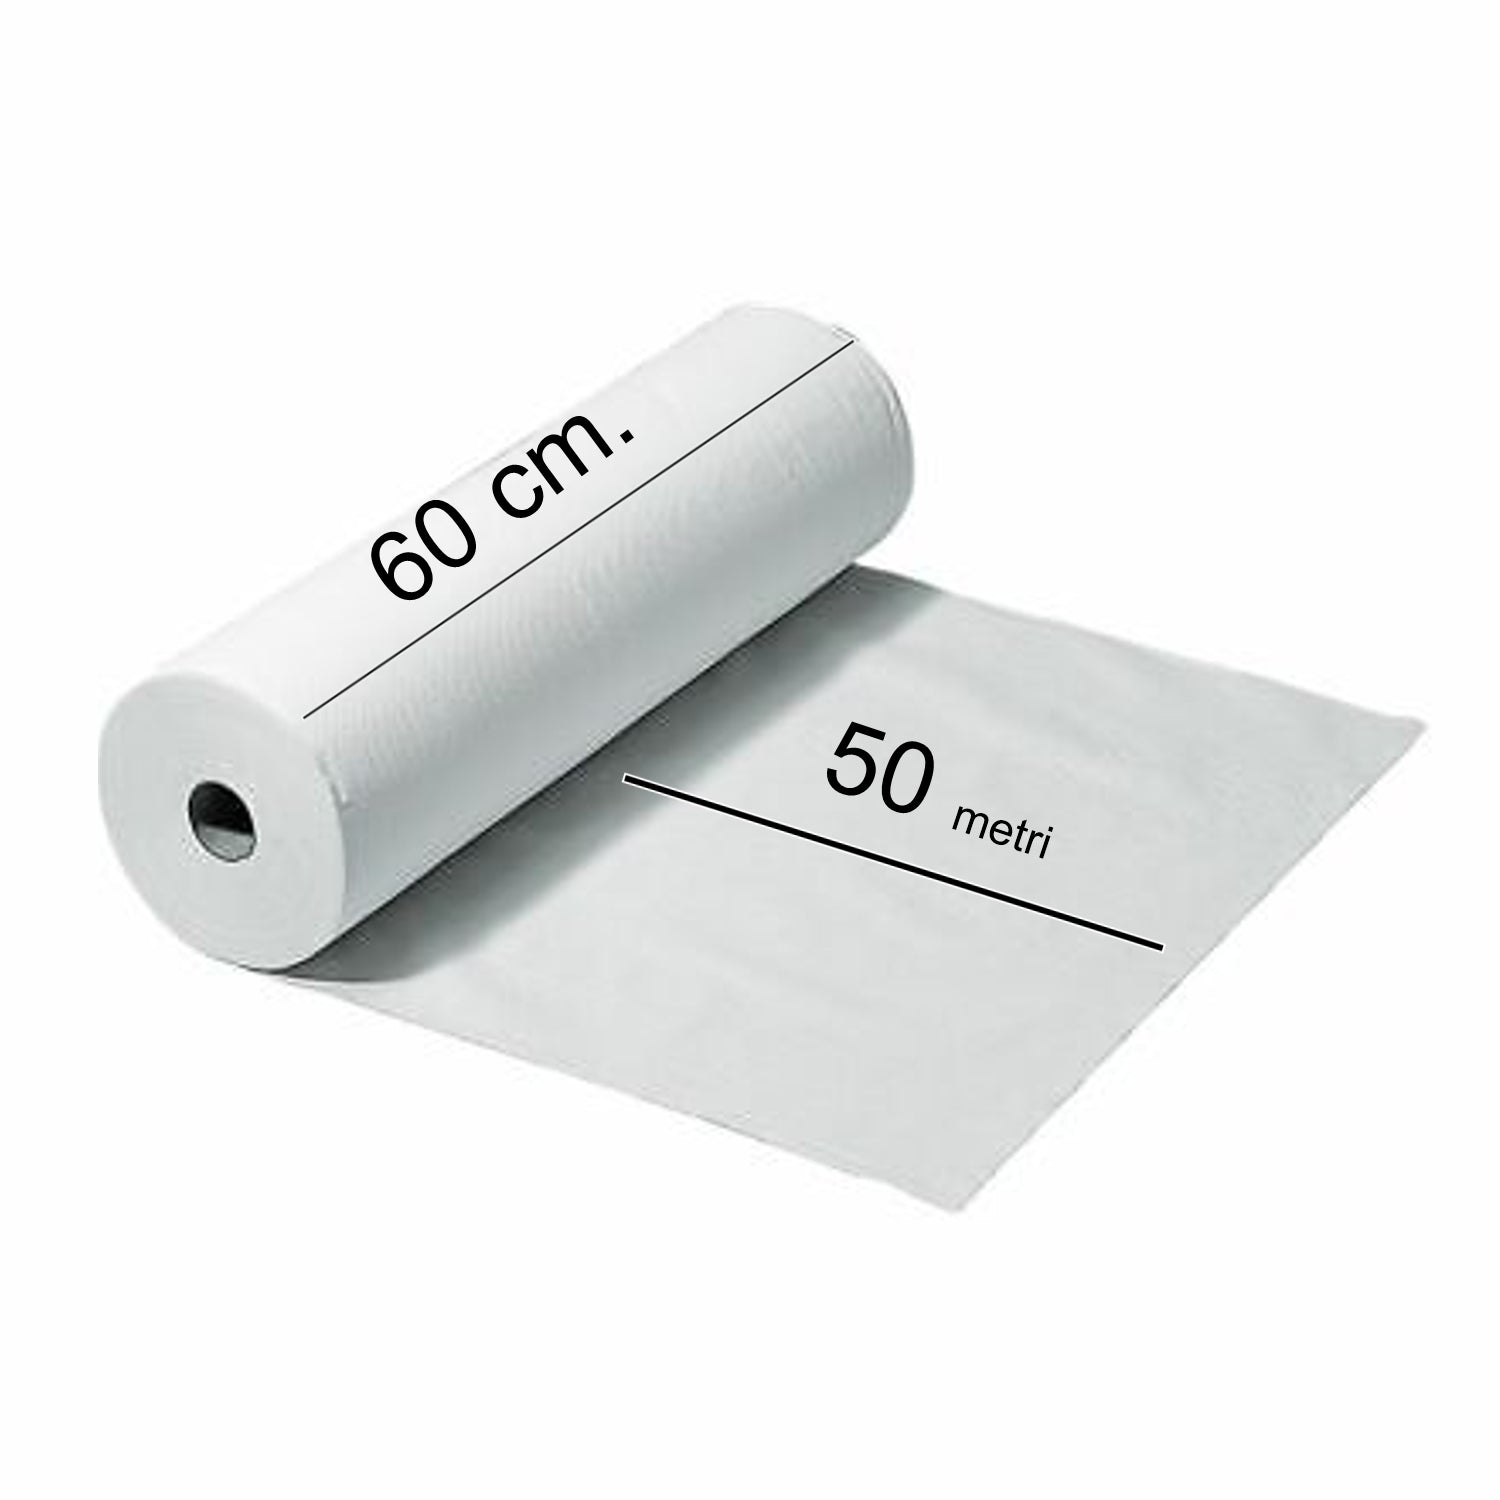 Impermeabile lenzuolino medico 2 veli 50 metri 60 H Confezione da 9 rotoli C60205 Celtex